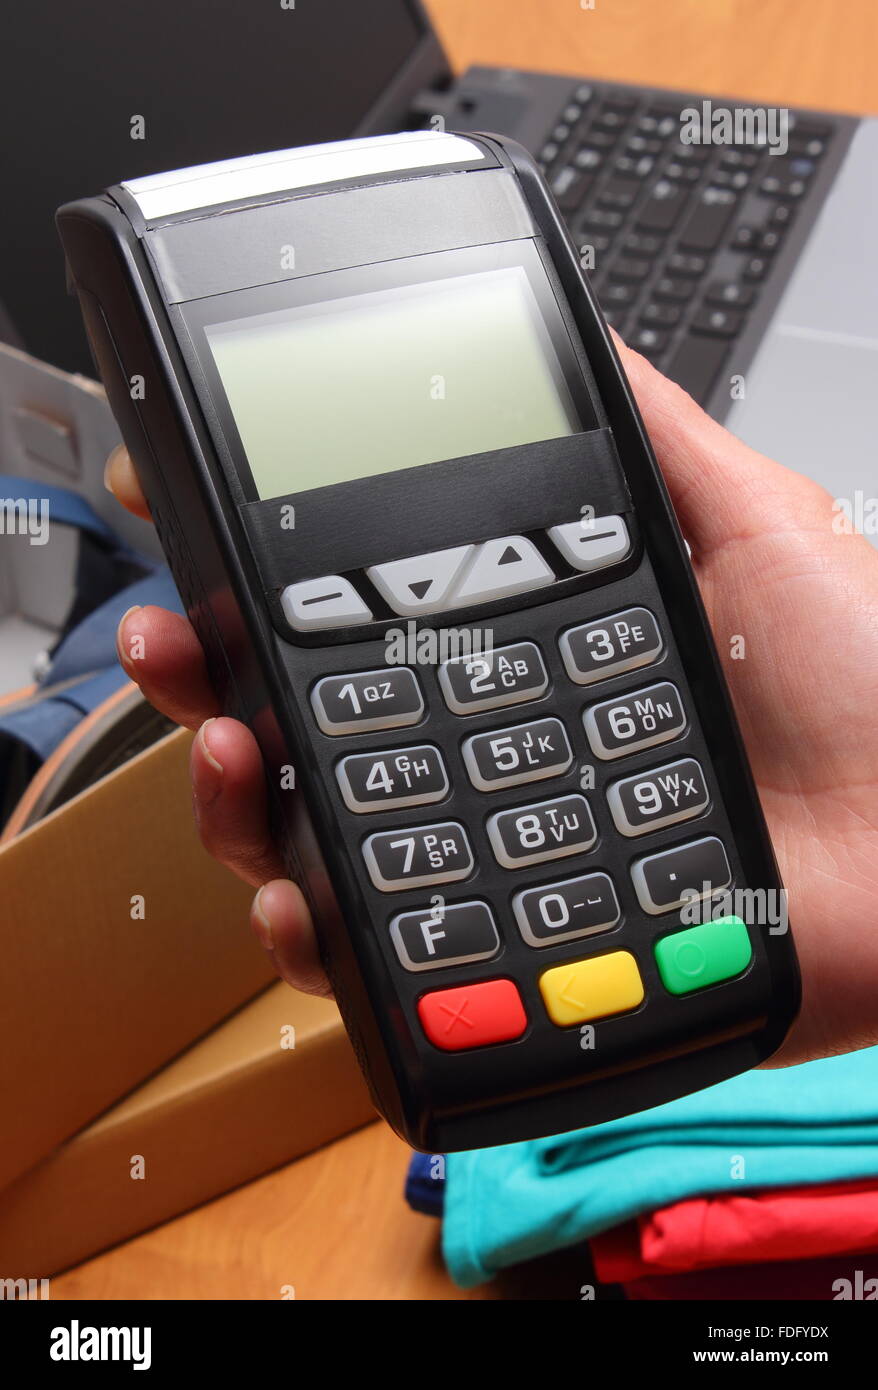 Utiliser un terminal de paiement pour payer vos achats en magasin, saisissez un numéro d'identification personnel, lecteur de carte de crédit, vêtements Banque D'Images